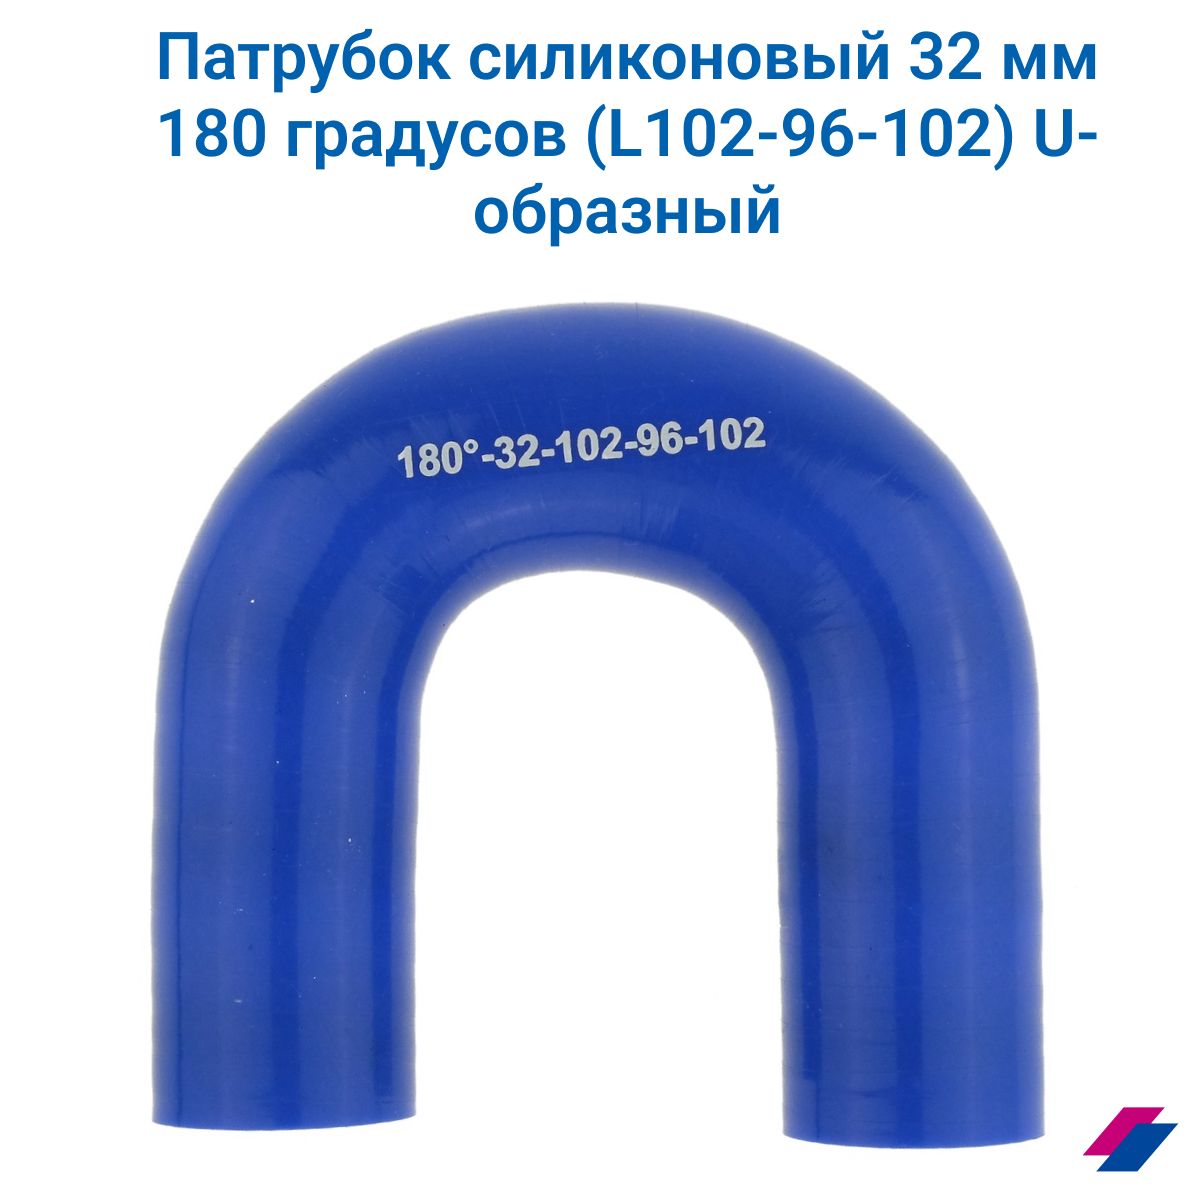 Патрубок силиконовый s образный 32 мм. Патрубок силиконовый диаметр 160 мм. Манжет глухой силиконовый 32мм.